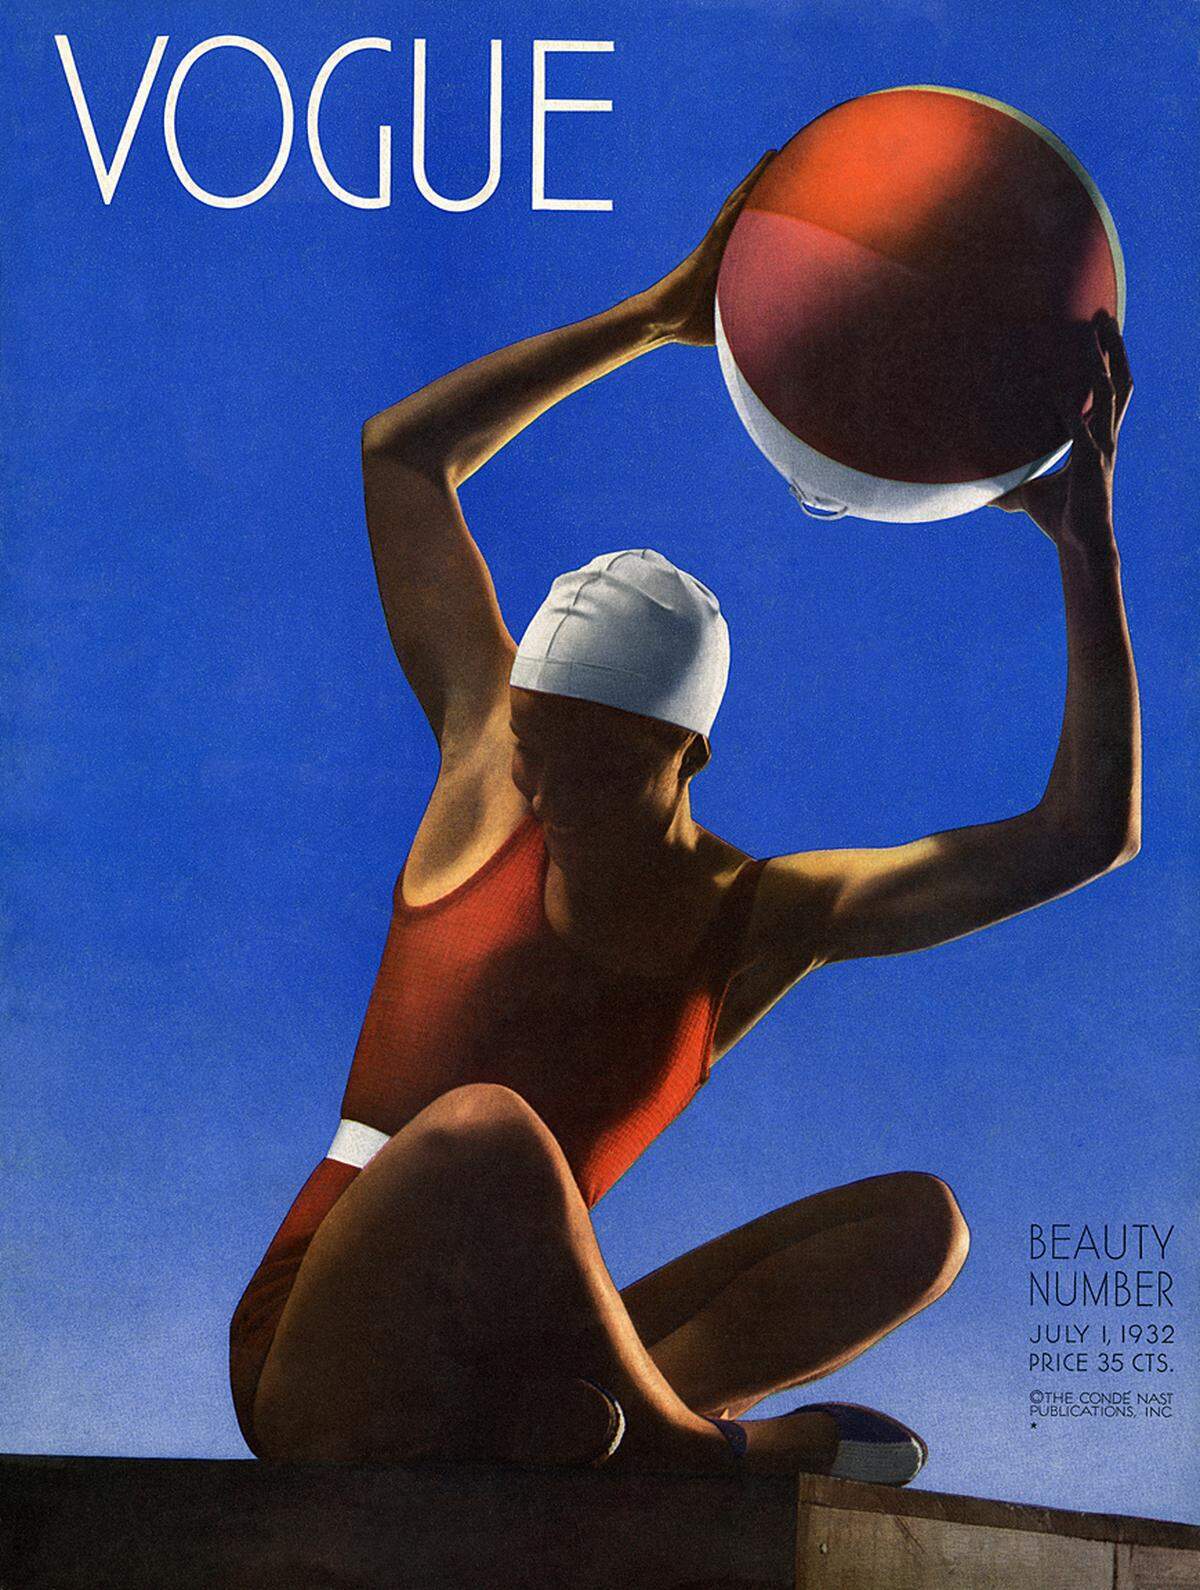 Edward Steichen: Vogue, Juli 1932, Covermotiv vonEdward Steichen, Courtesy Condé Nast Archive